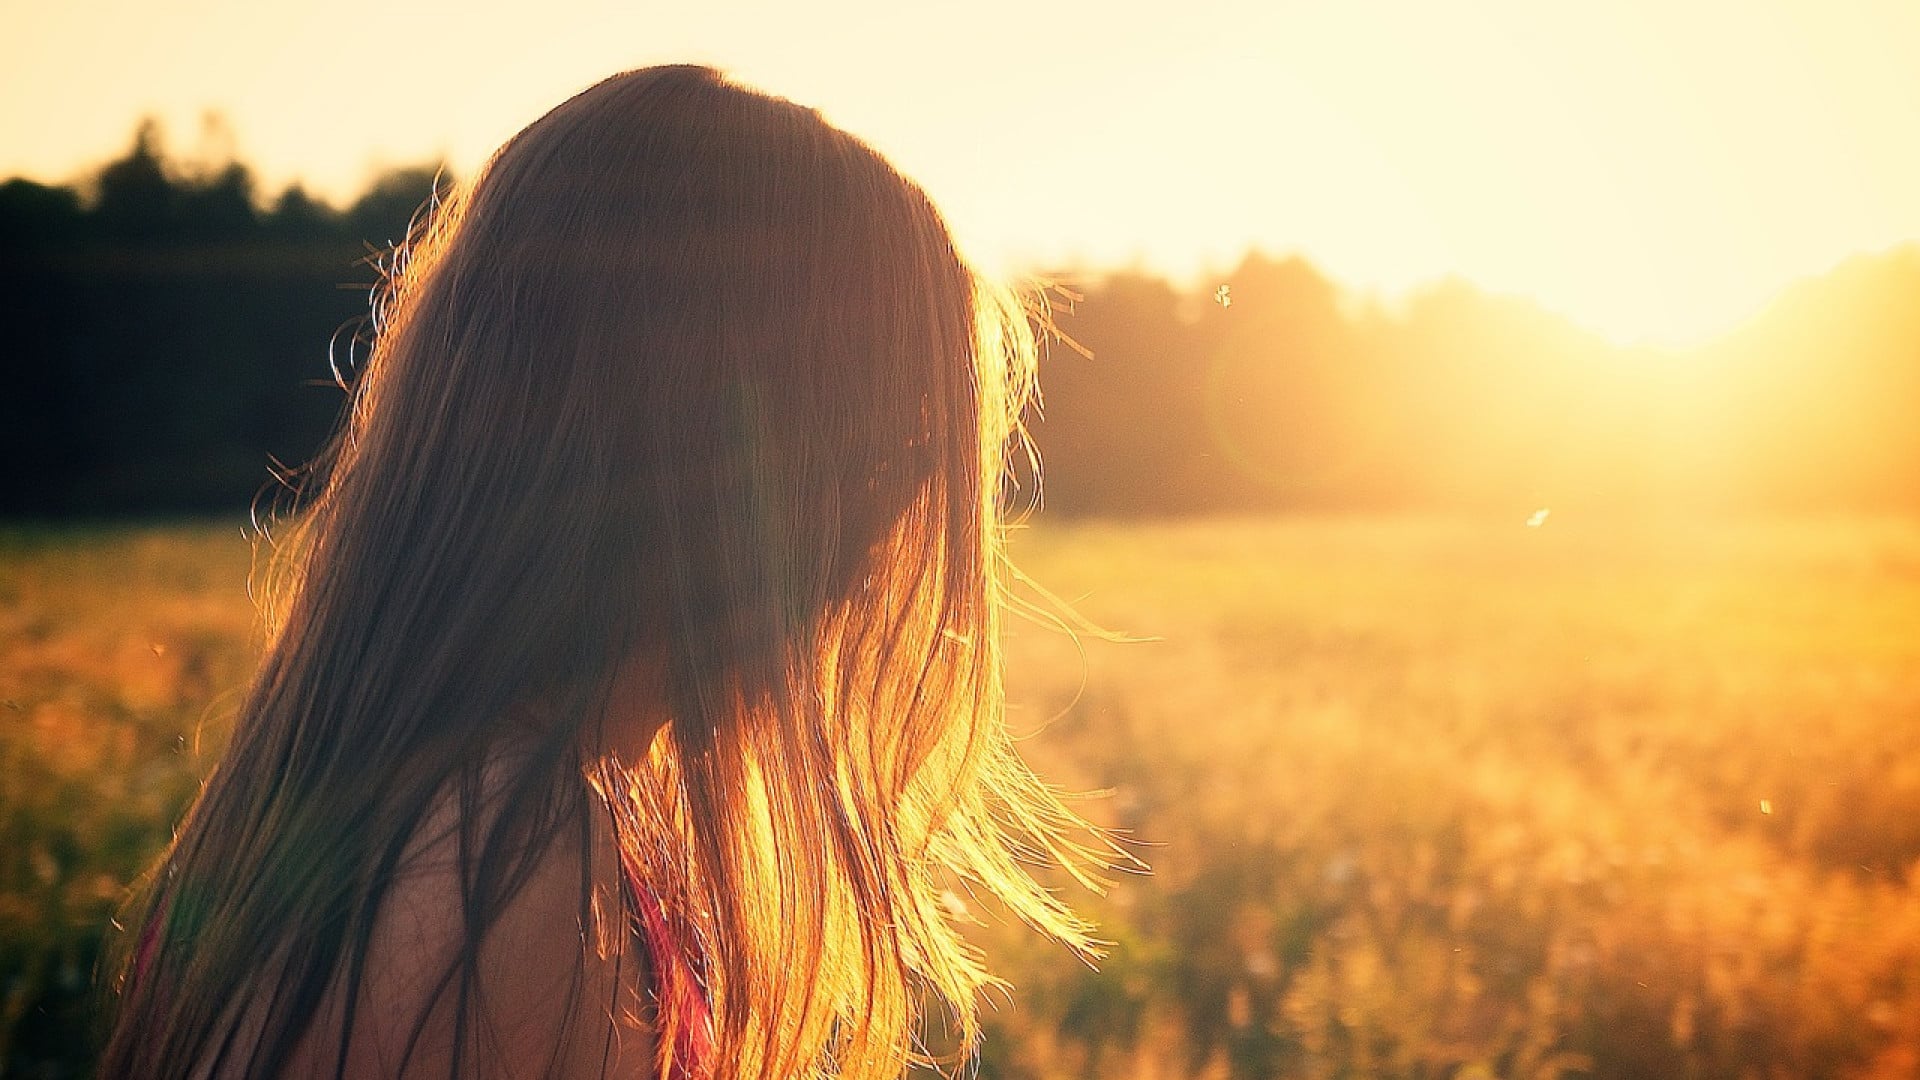 Femme regardant un coucher de soleil sur un champ, ses cheveux, préalablement éclaircis par la chute des cheveux, teintés par la lumière chaude.